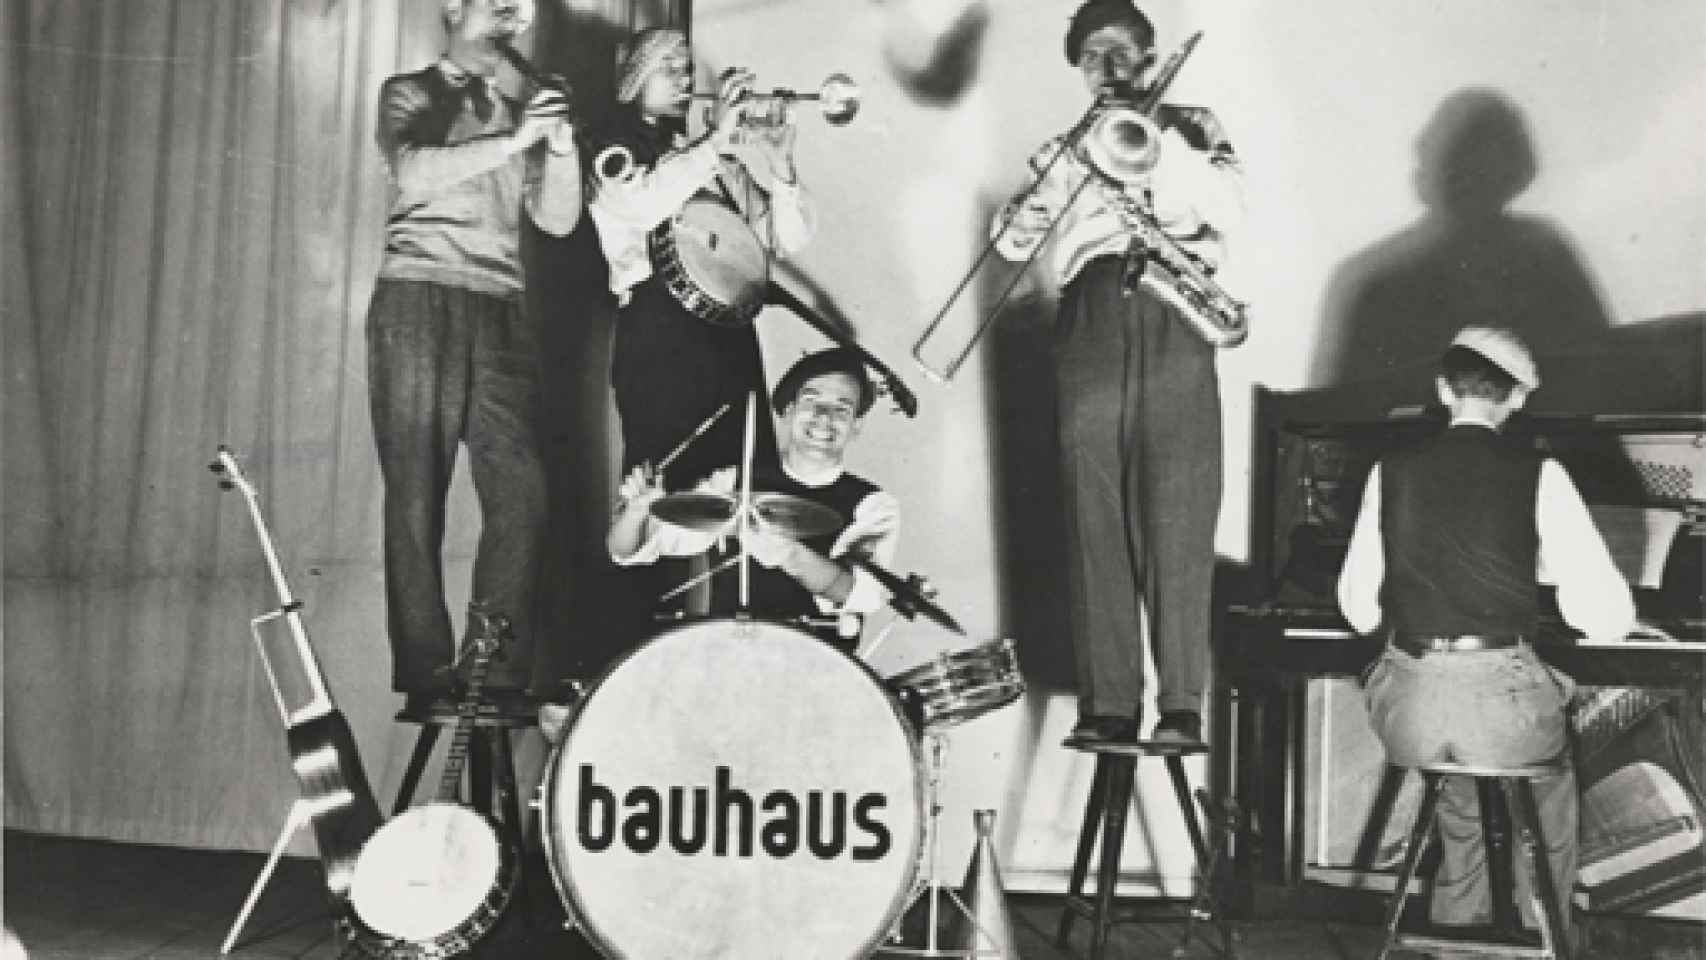 Image: La Bauhaus se divierte